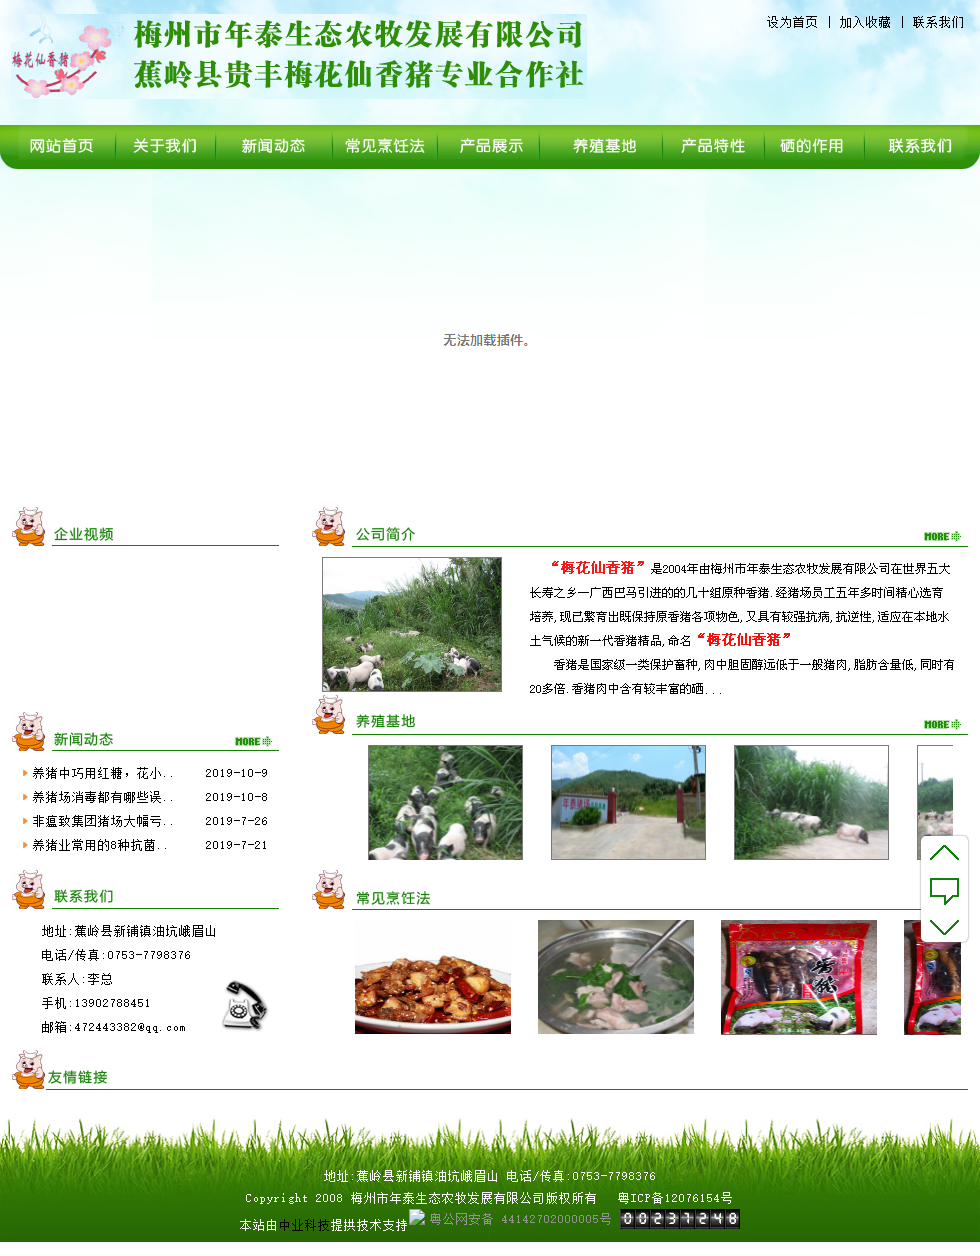 梅州市年泰生态农牧发展有限公司网站案例